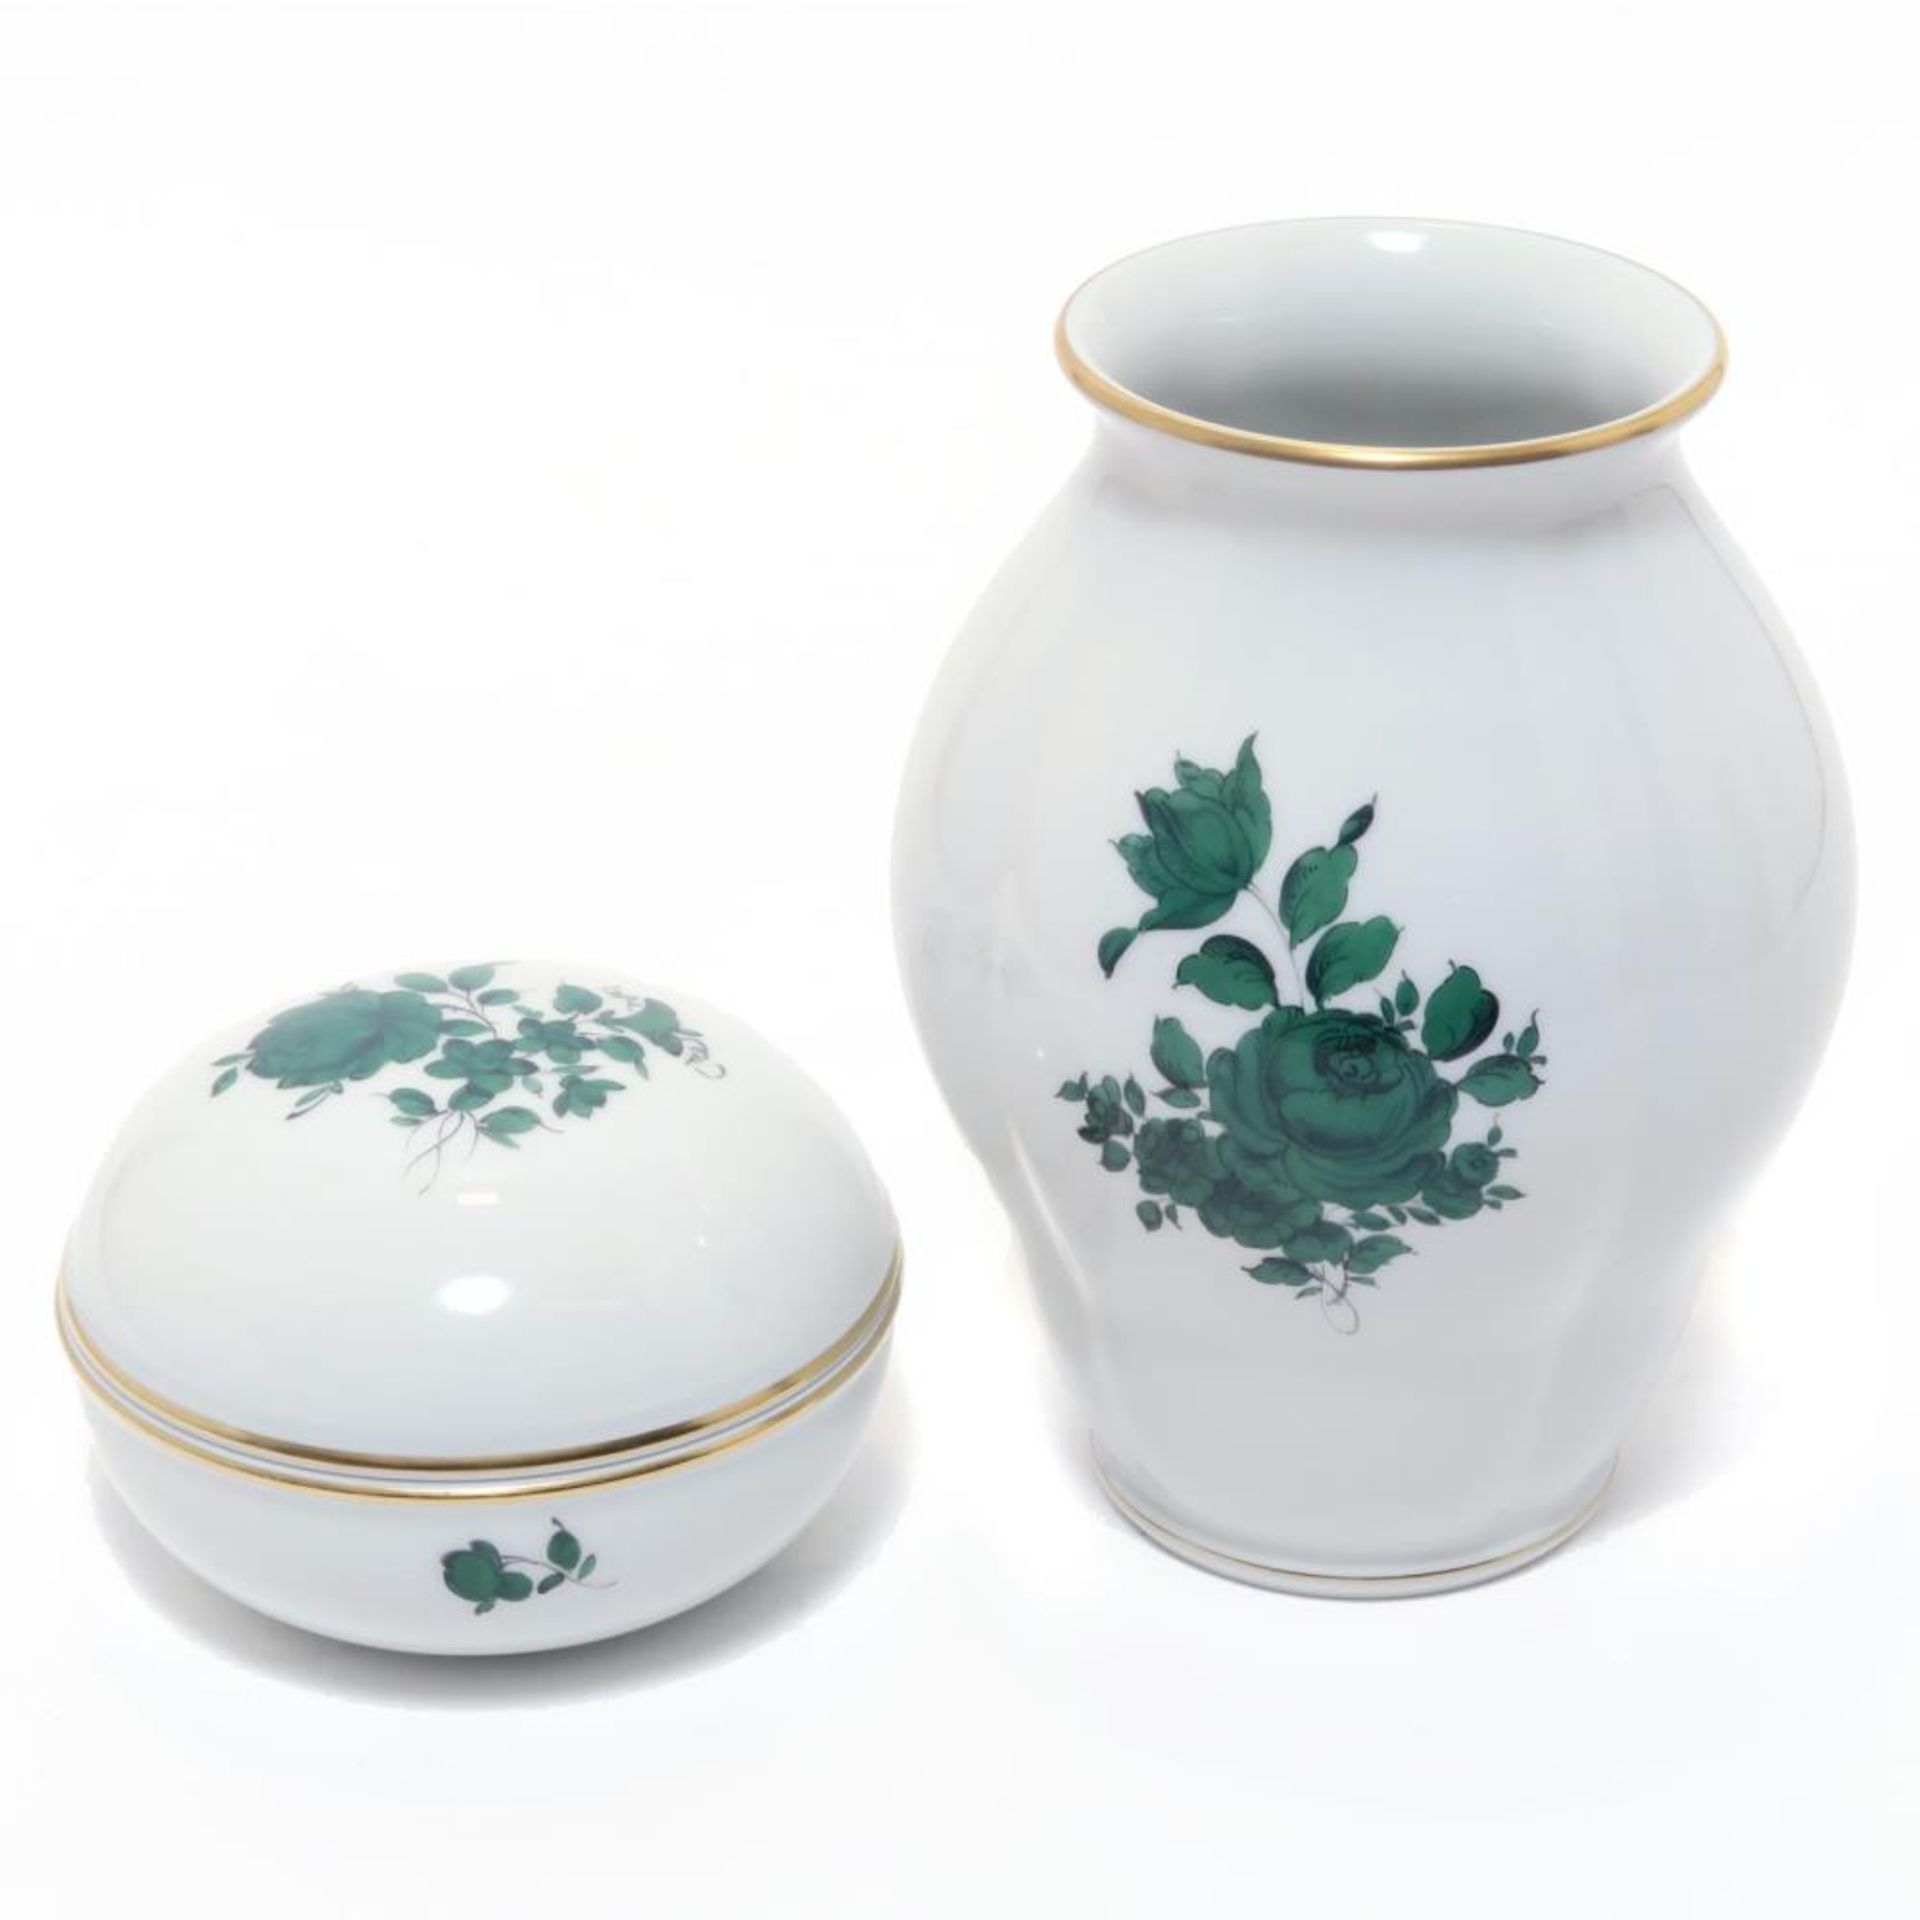 Vase und Dose. Porzellan, Farbstaffage, Goldrand